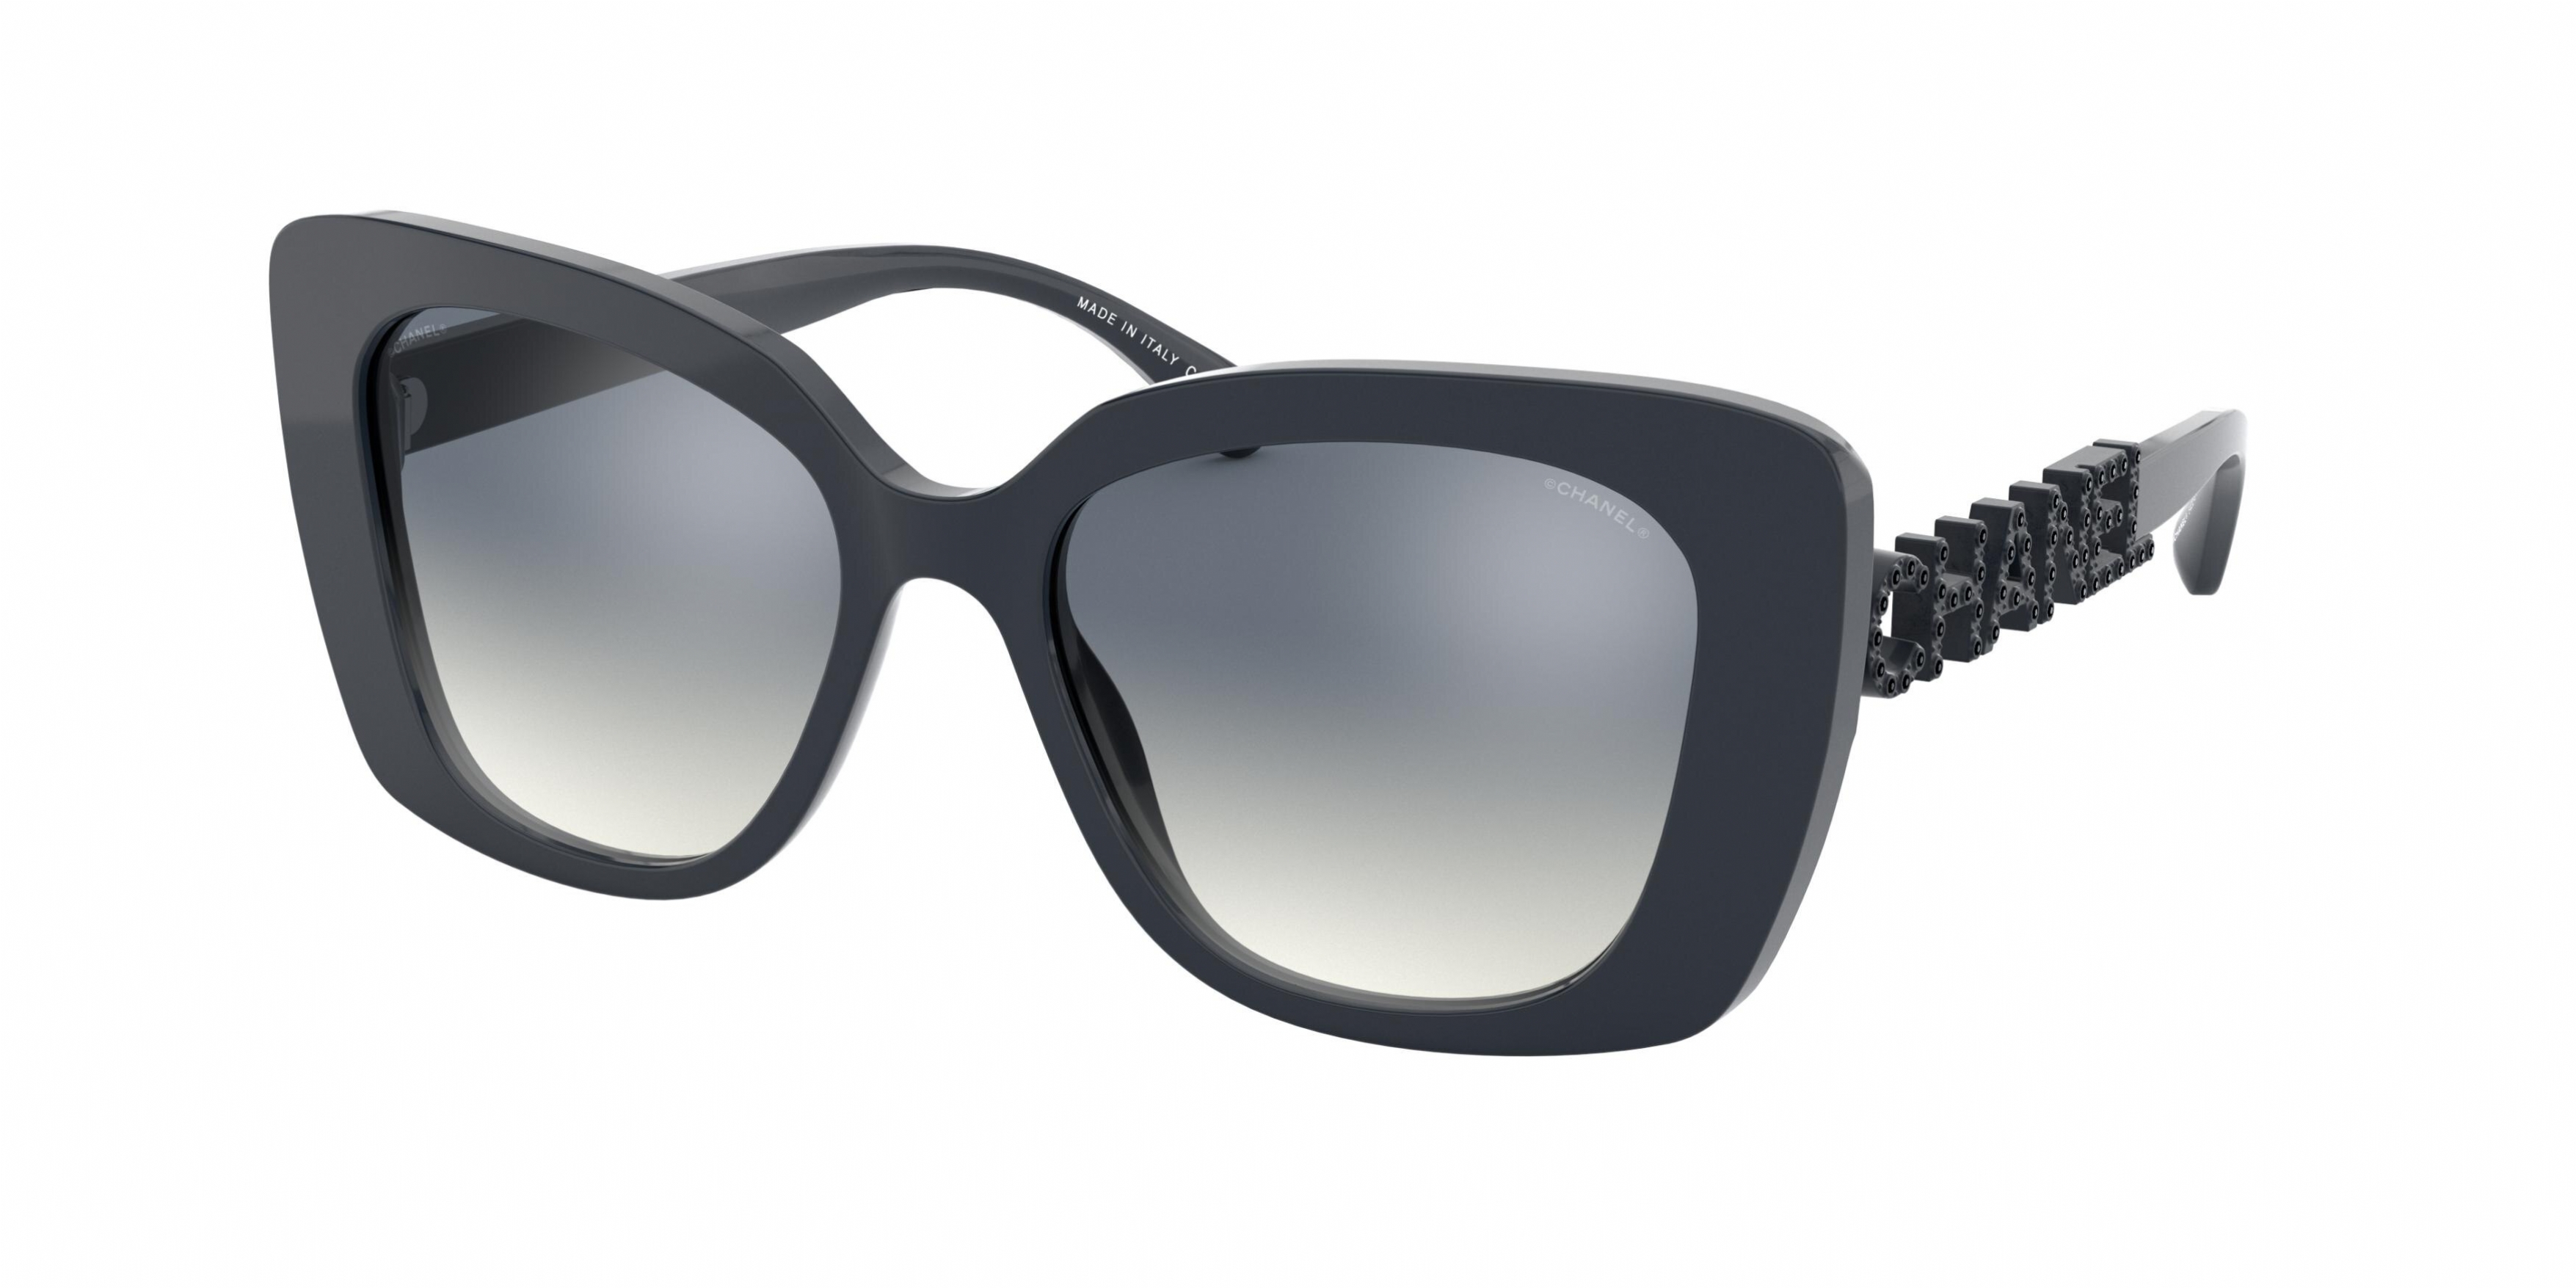 Chanel 5422b Sunglasses